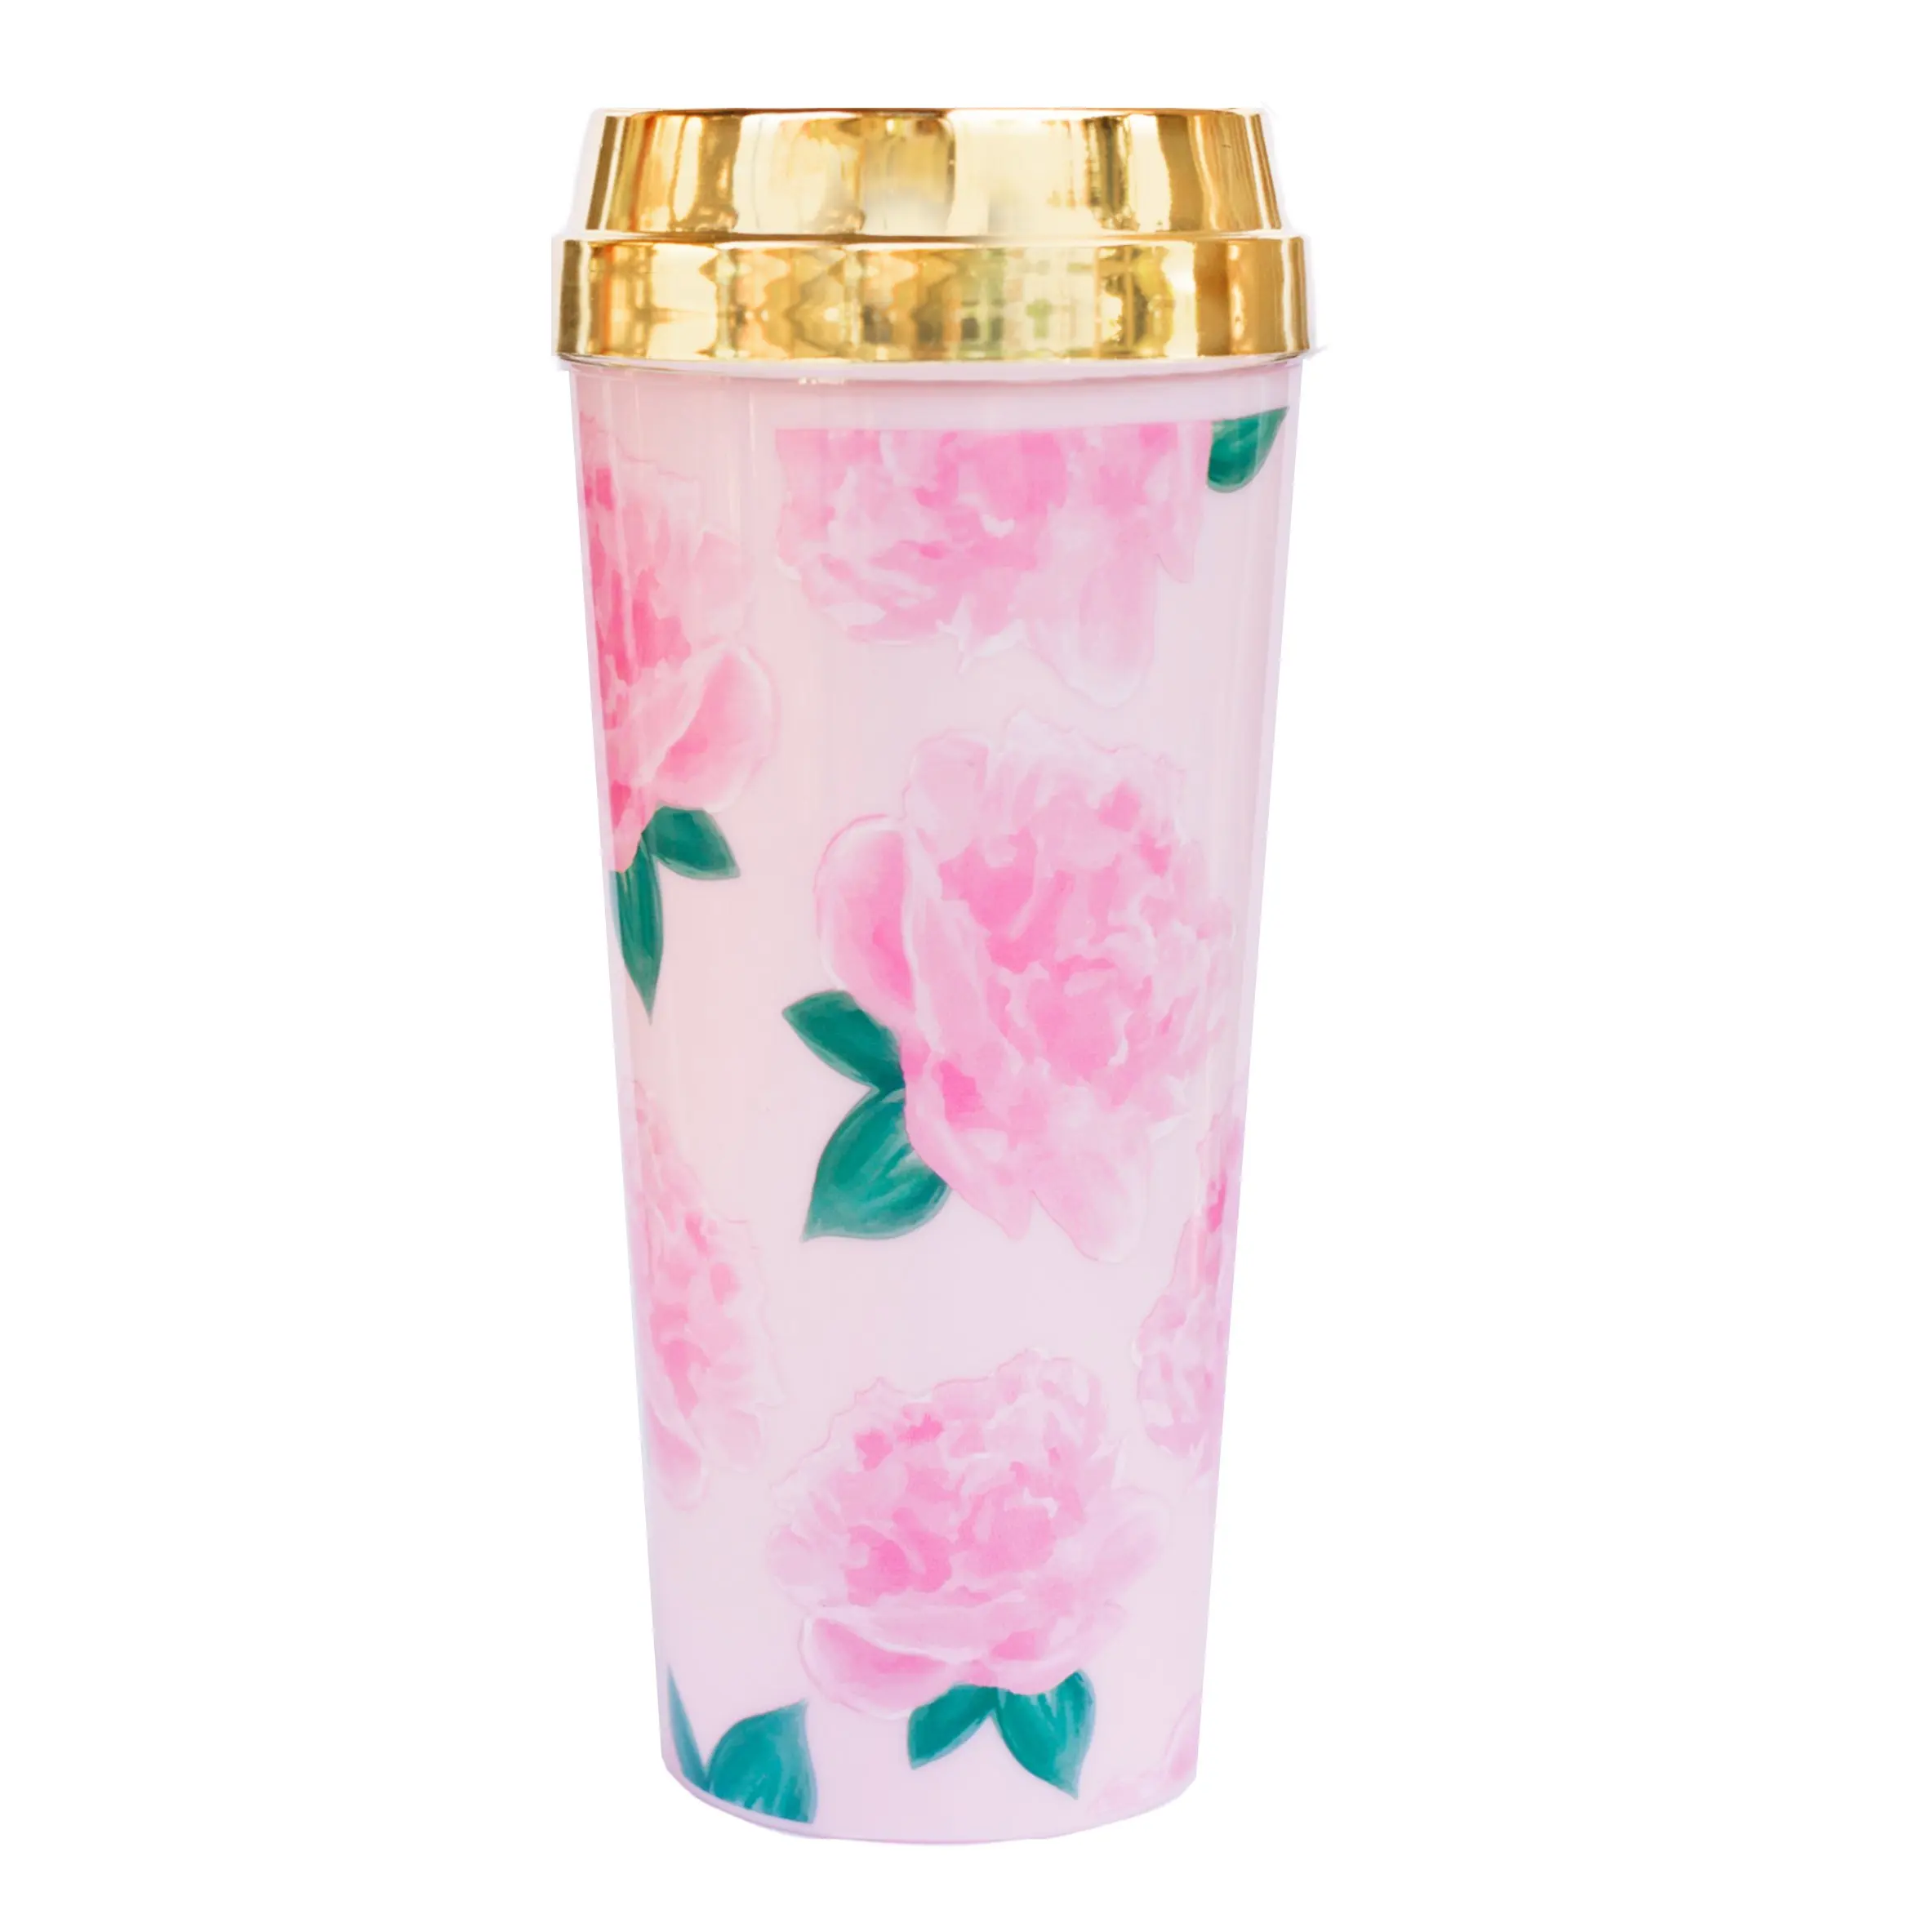 pink travel mug with handle